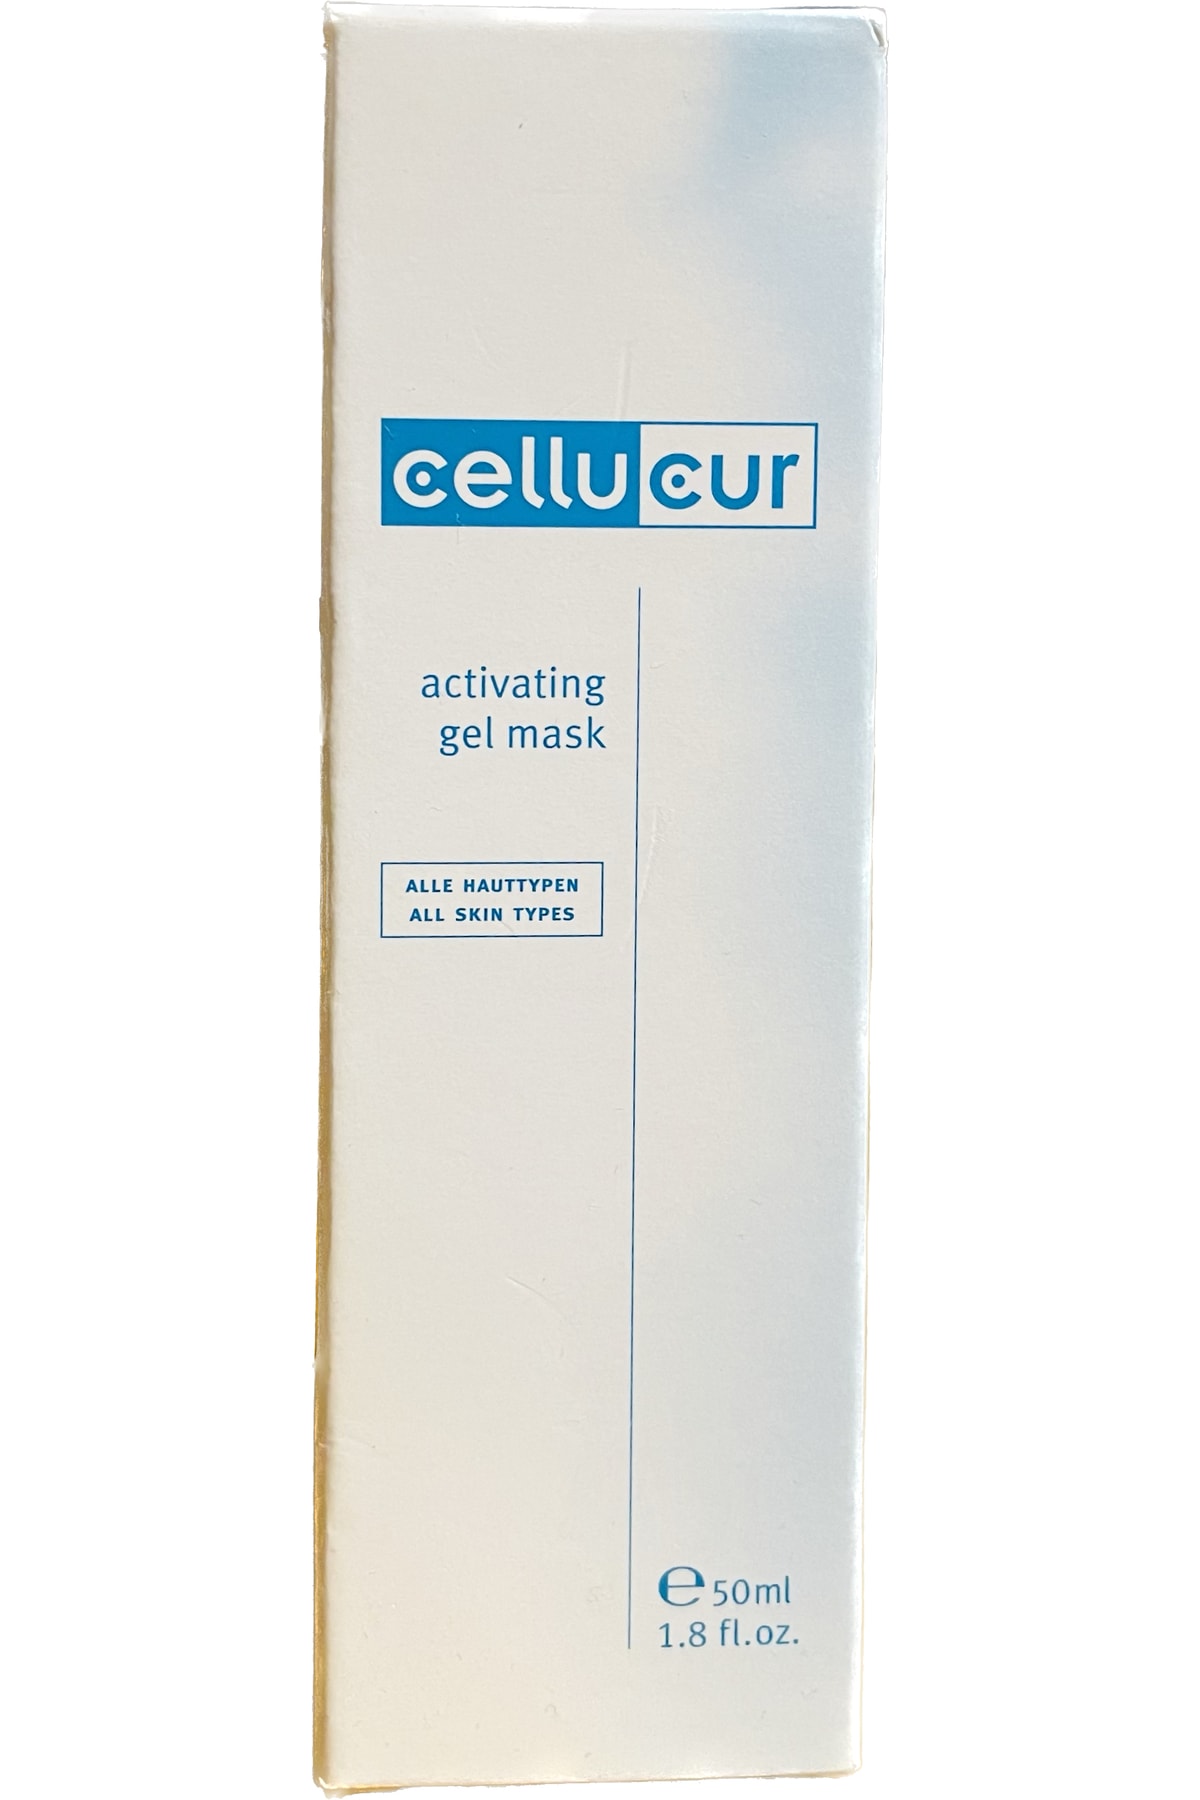 cellucur Activating Gel Mask